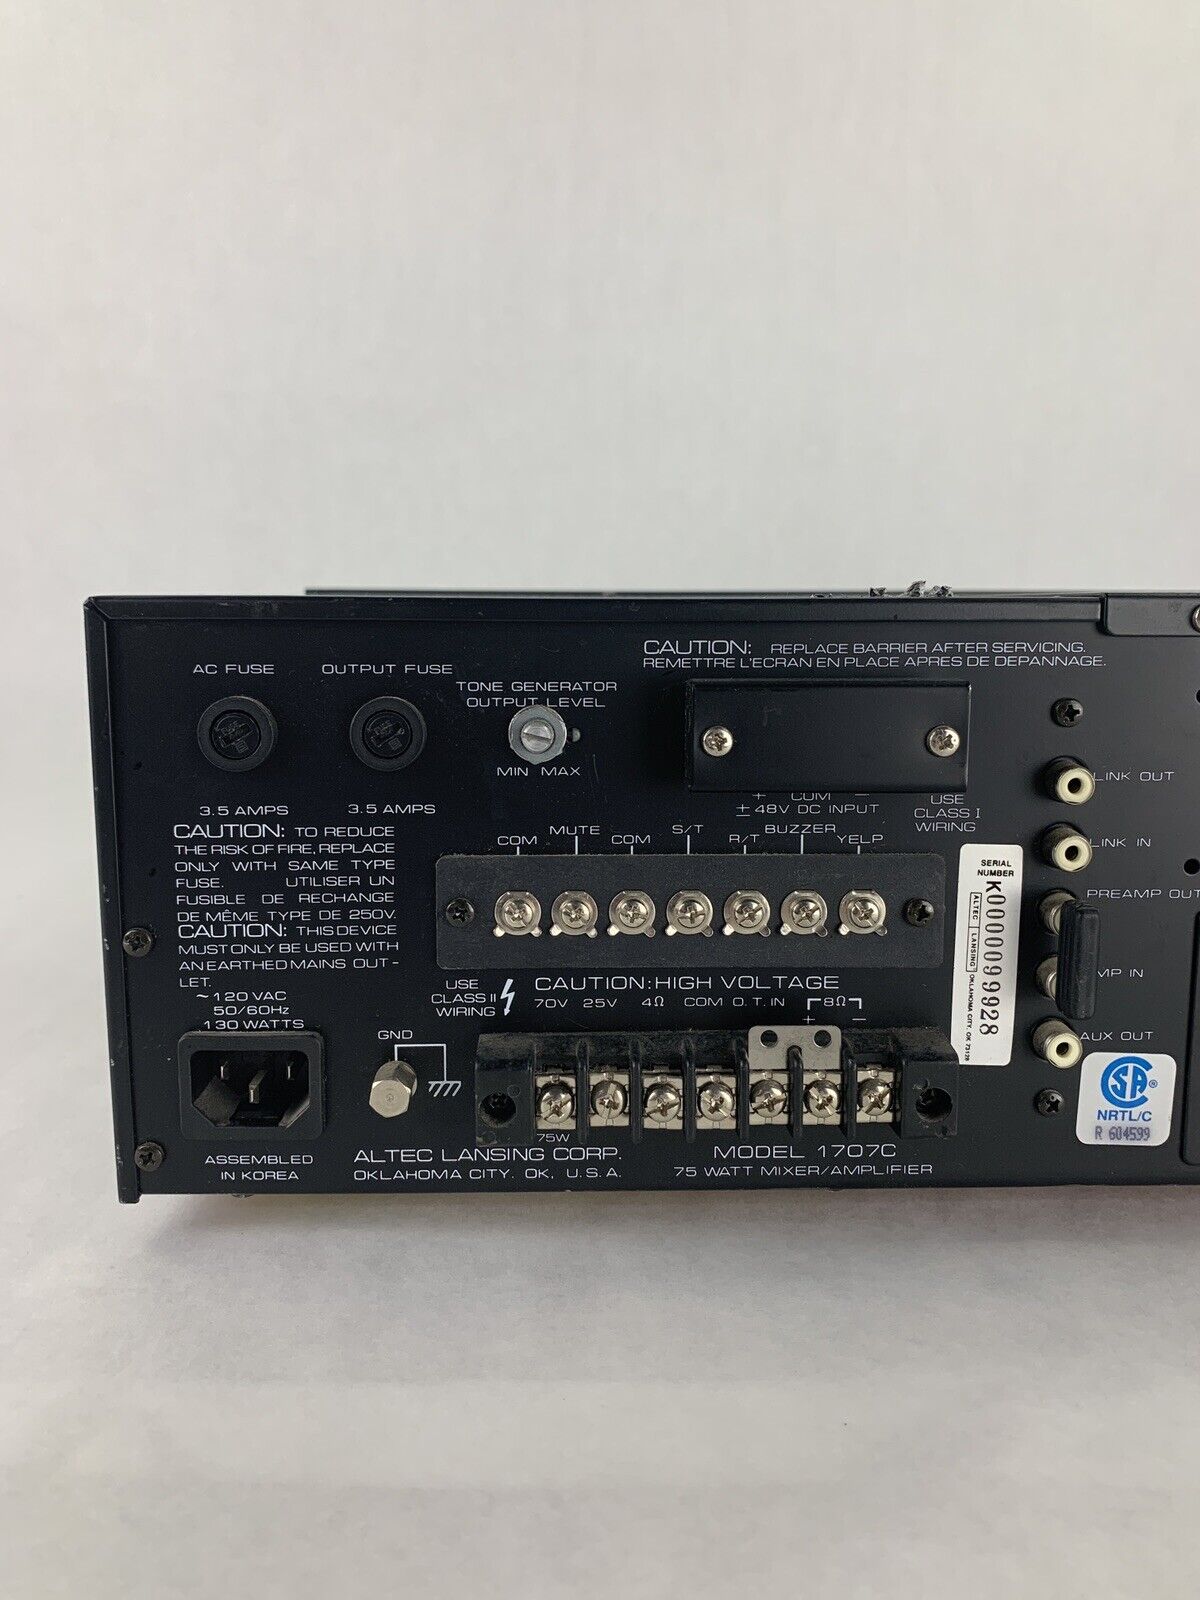 Altec Lansing 1707C Mixer AMP Amplifier Tested